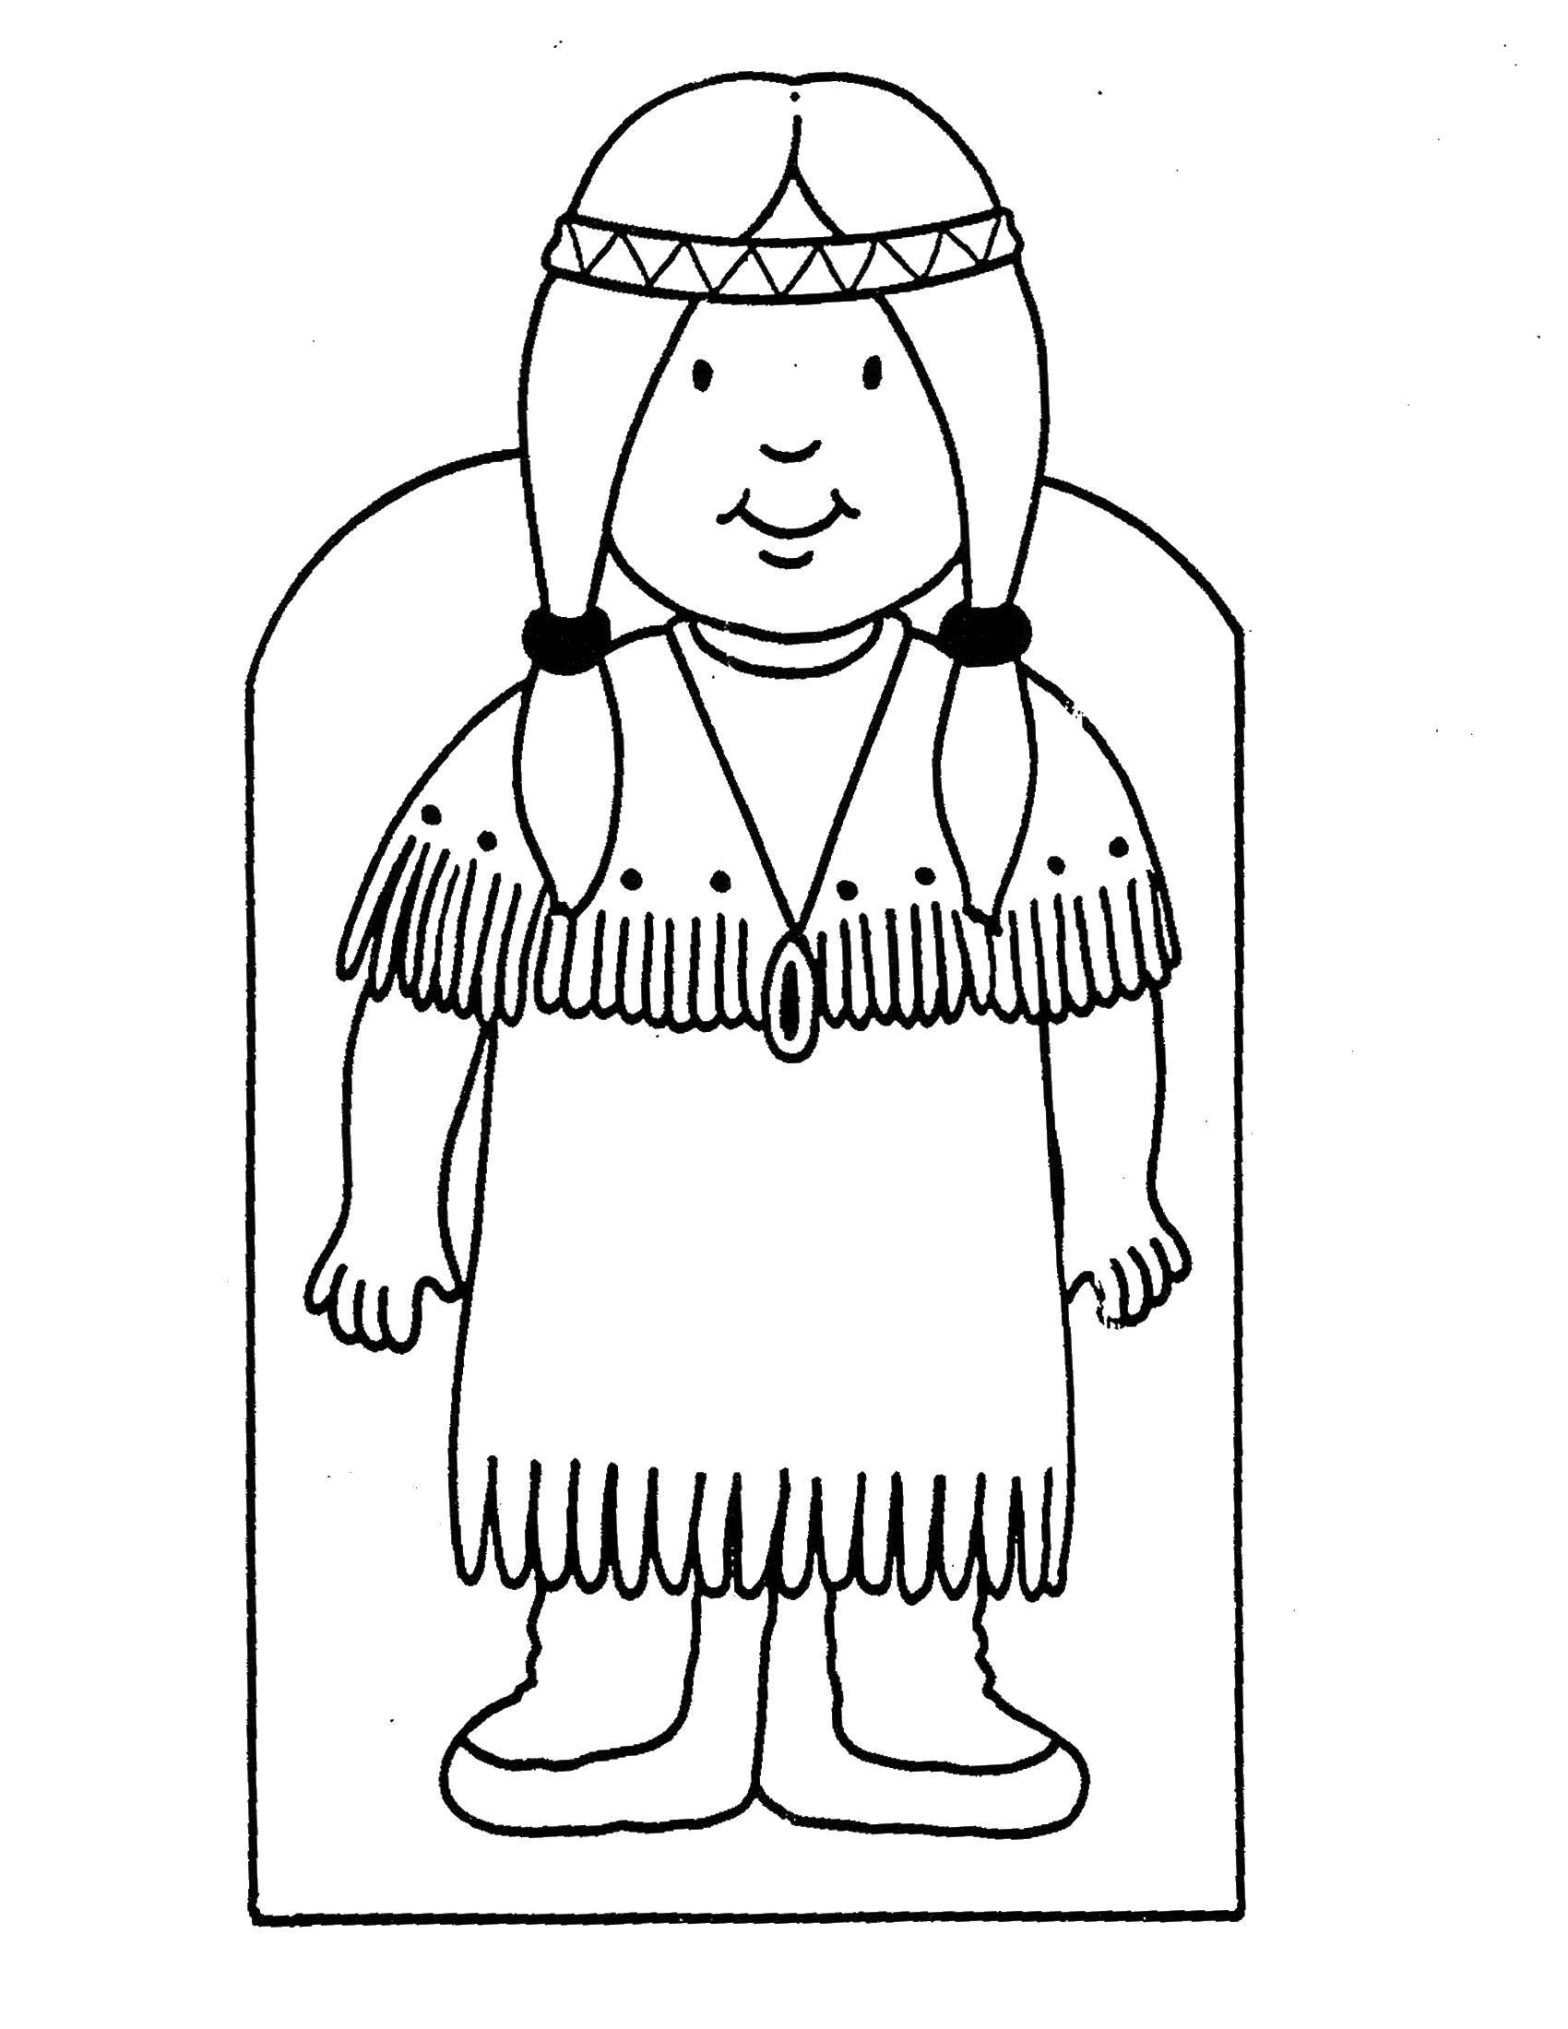 Ребенок раскрашивает картинку индейца (народы)